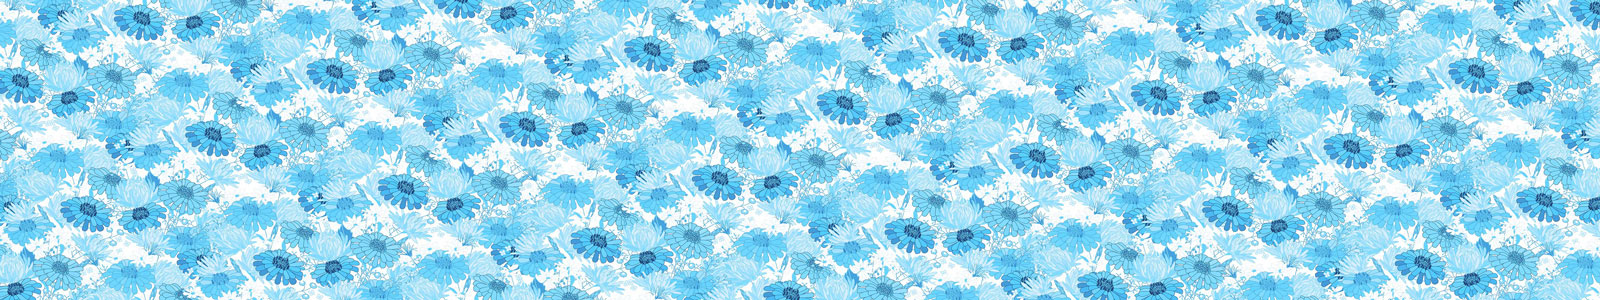 №4922 - Голубые графические цветы